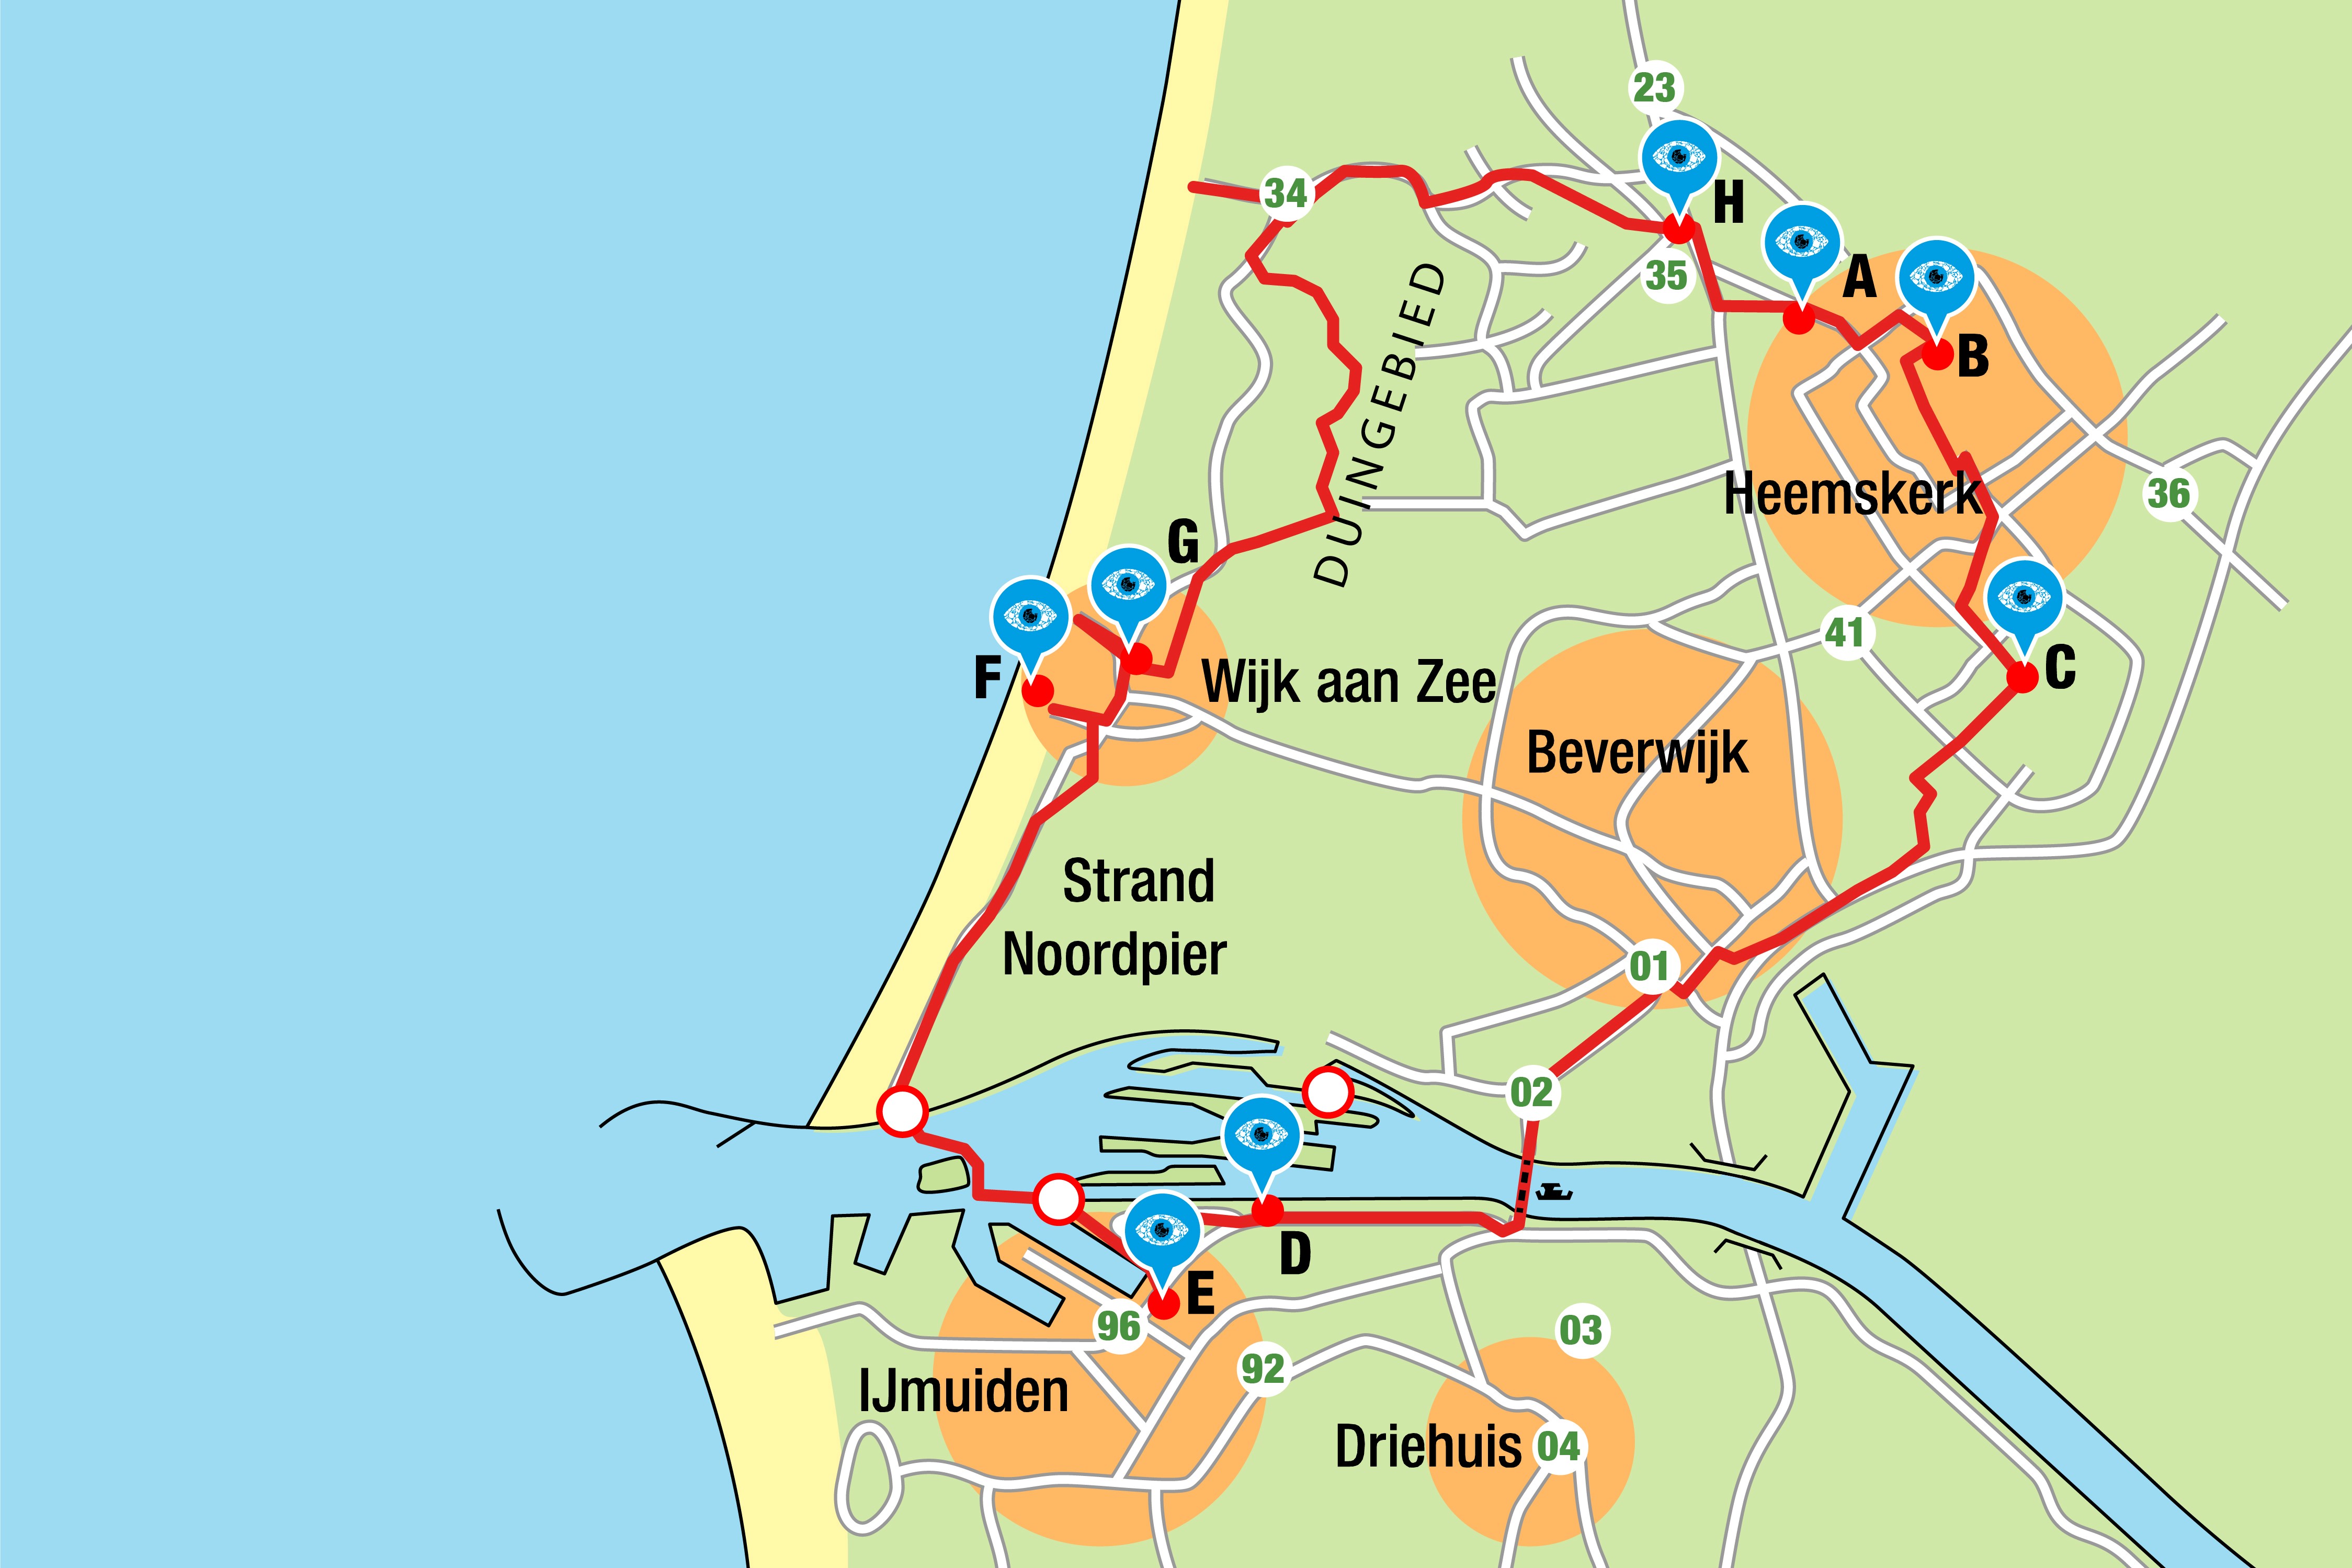 Kaart met de fietsroute langs 8 kunstwerken van afval in de IJmond